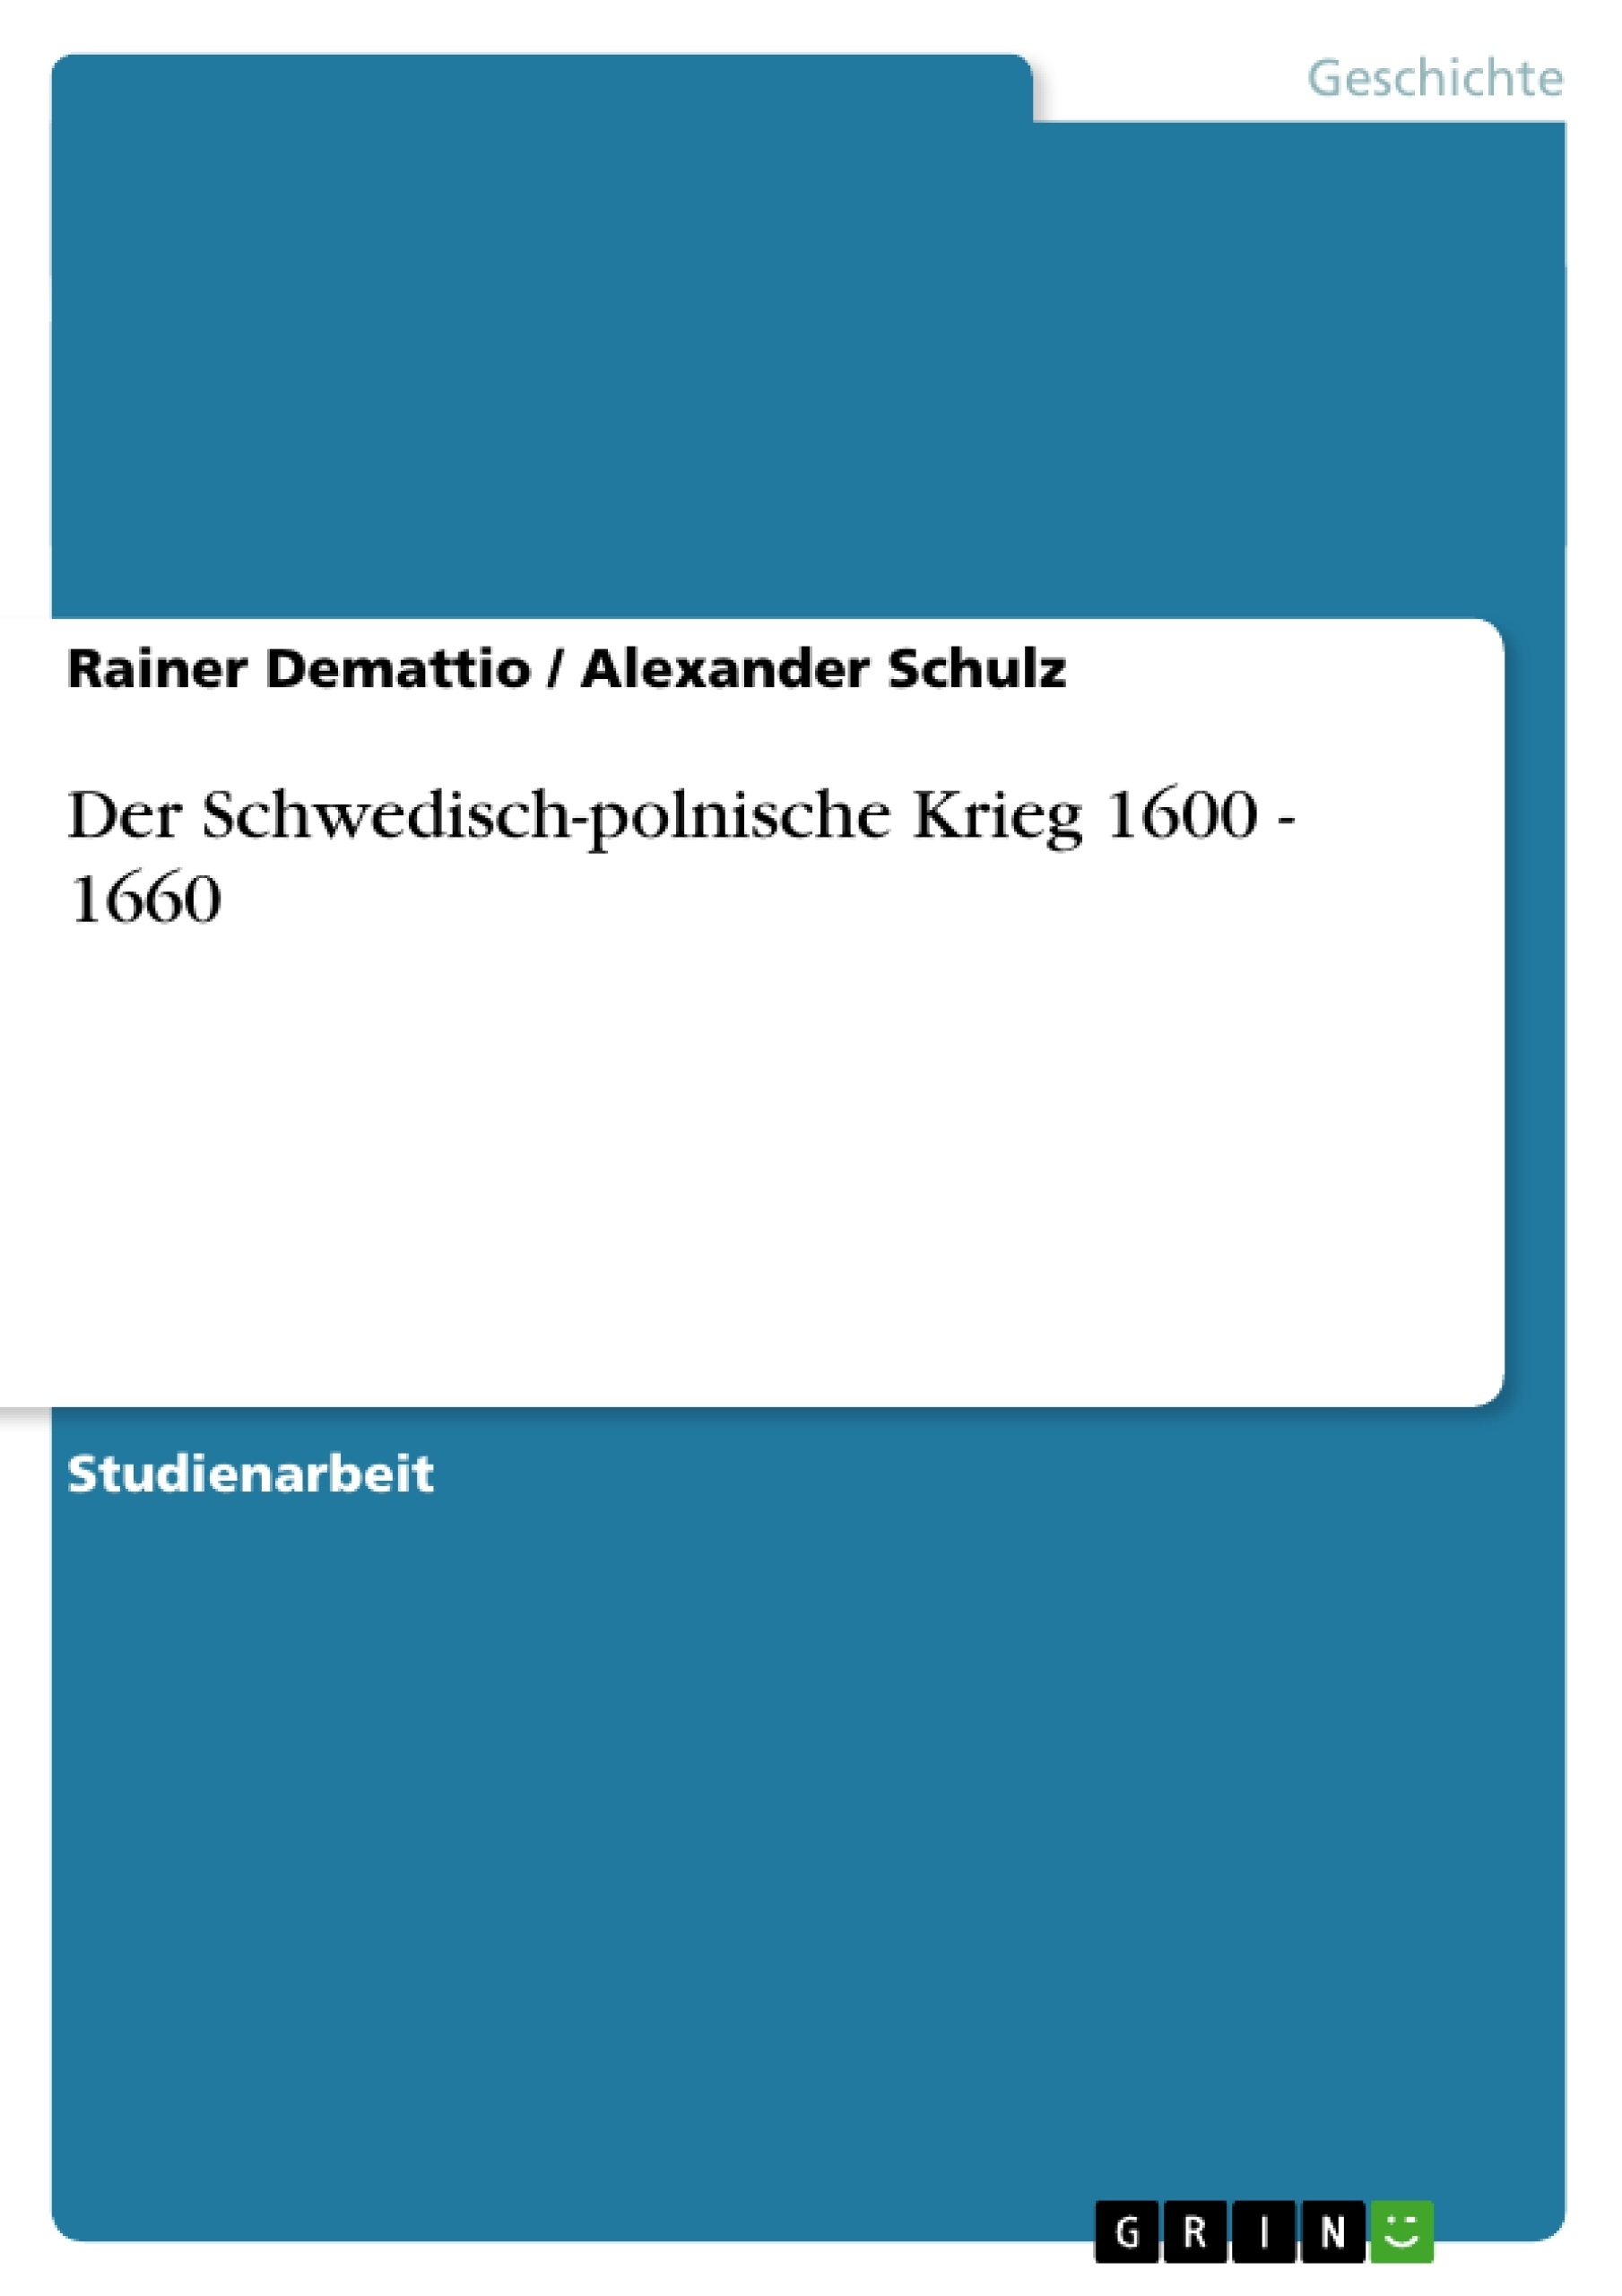 Título: Der Schwedisch-polnische Krieg 1600 - 1660